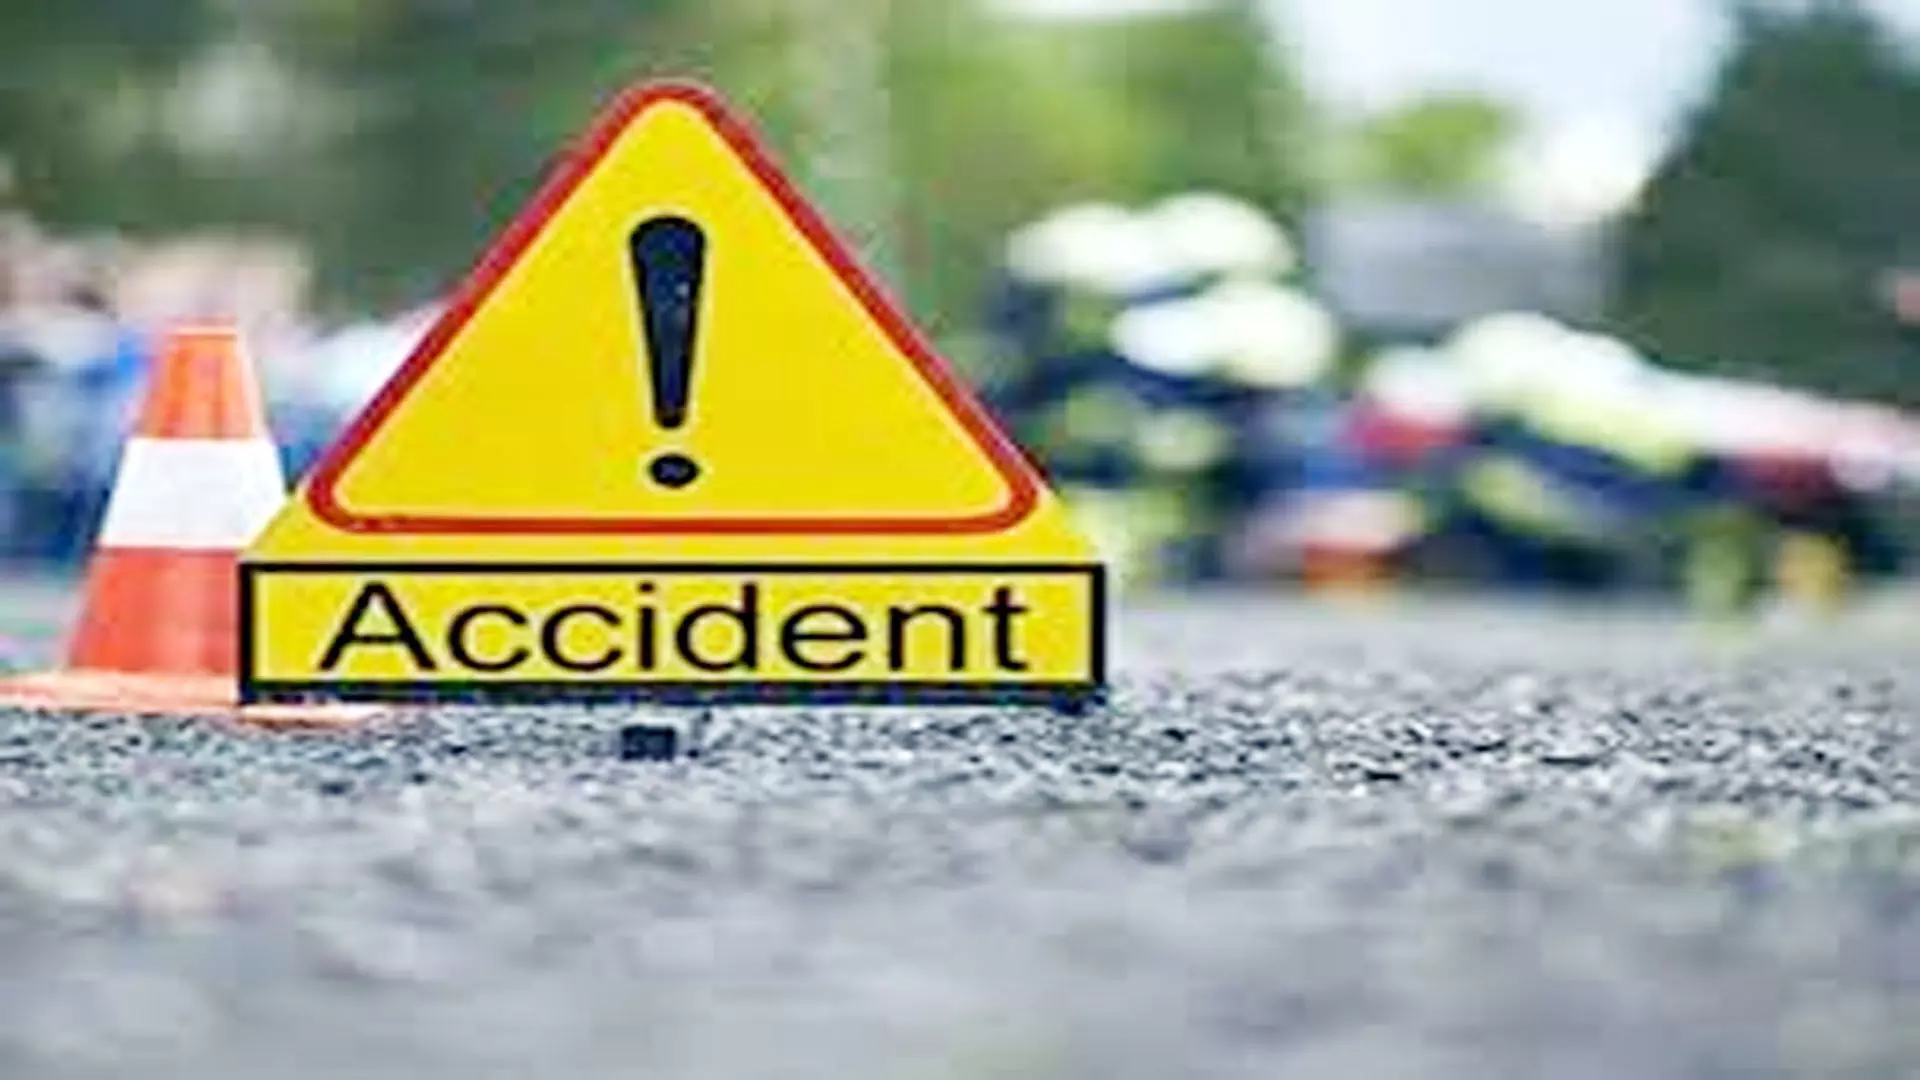 रामबन जिले में वाहन के ट्रक से टकरा जाने के कारण एक व्यक्ति की मौत , 11 घायल